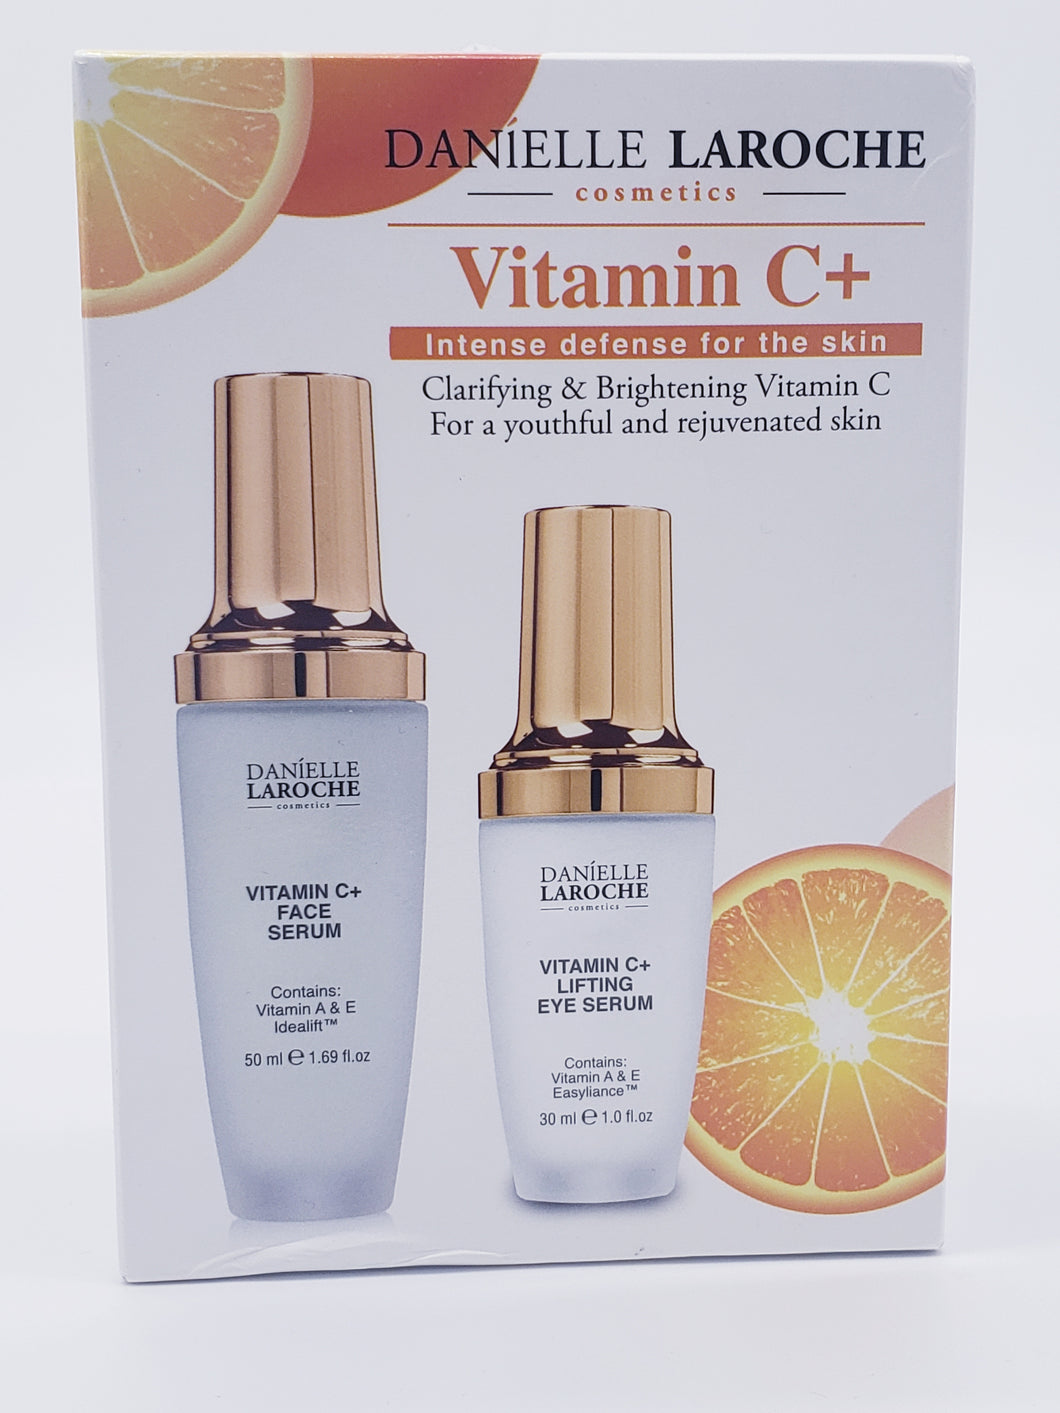 Danielle Laroche Vitamin C+ Clarifying & Brightening Vitamin C